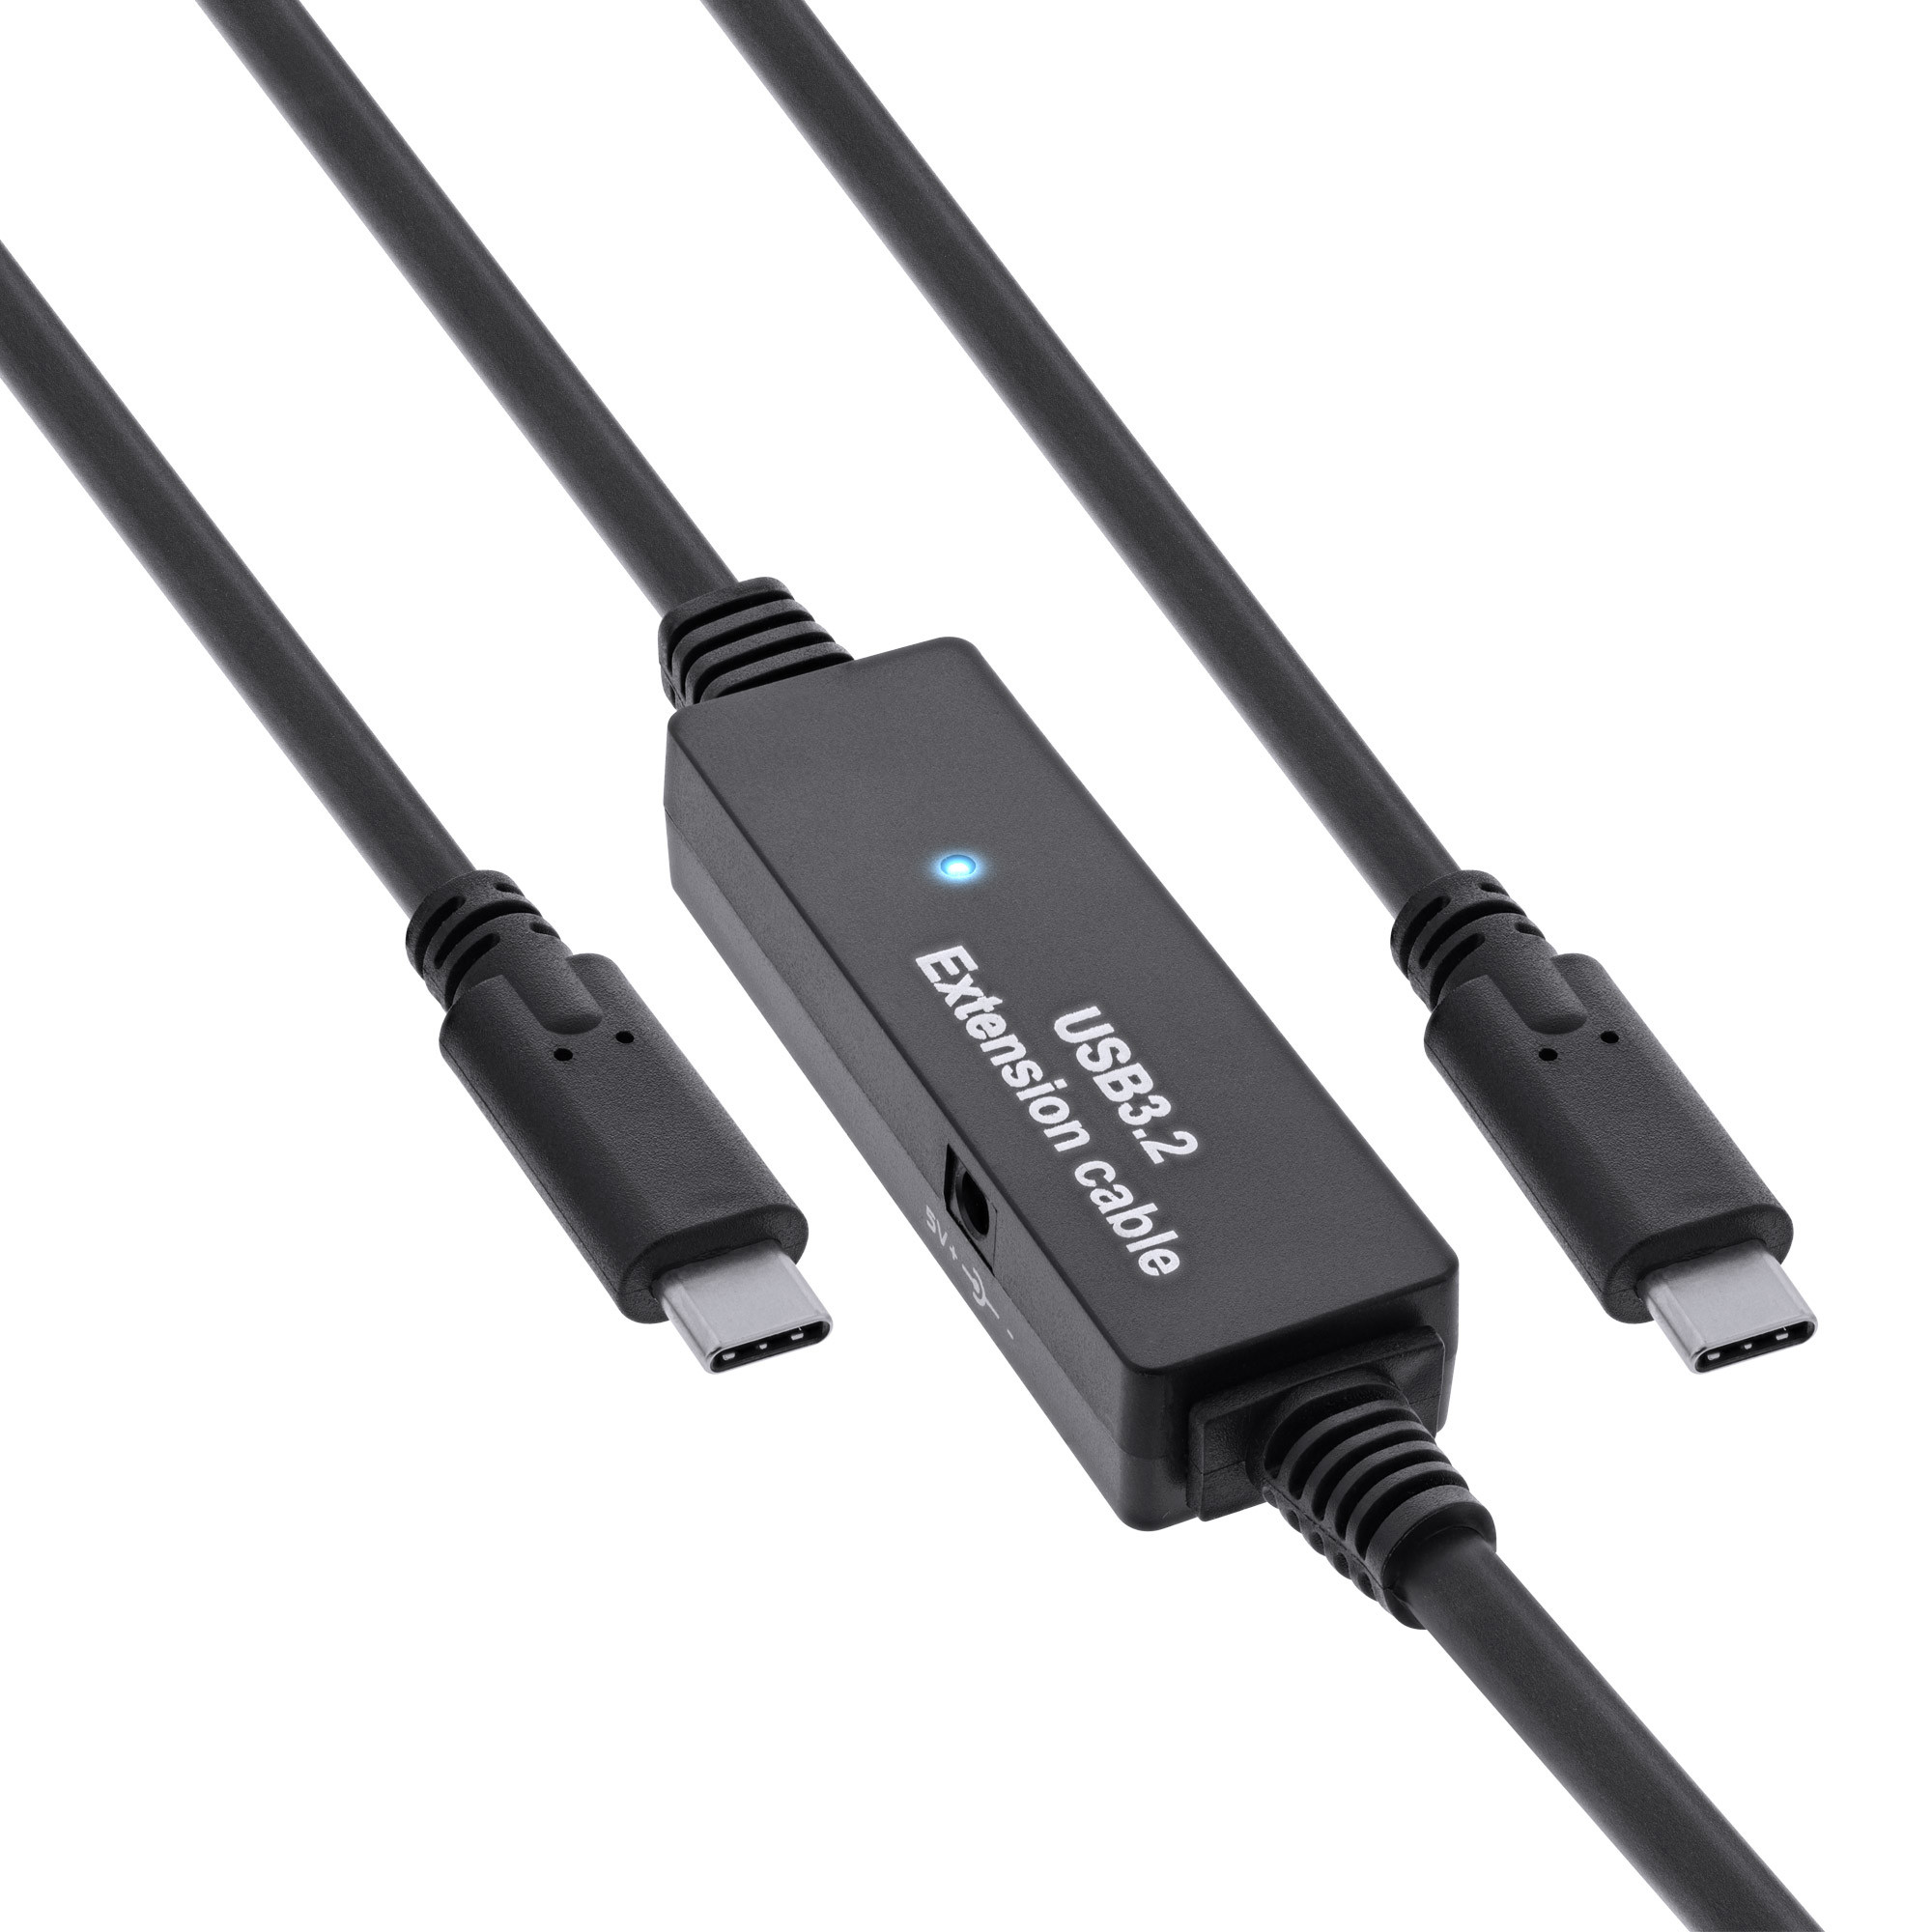 InLine-USB-3-2-Gen-1-actieve-kabel-USB-C-stekker-naar-USB-C-stekker-zwart-10-m